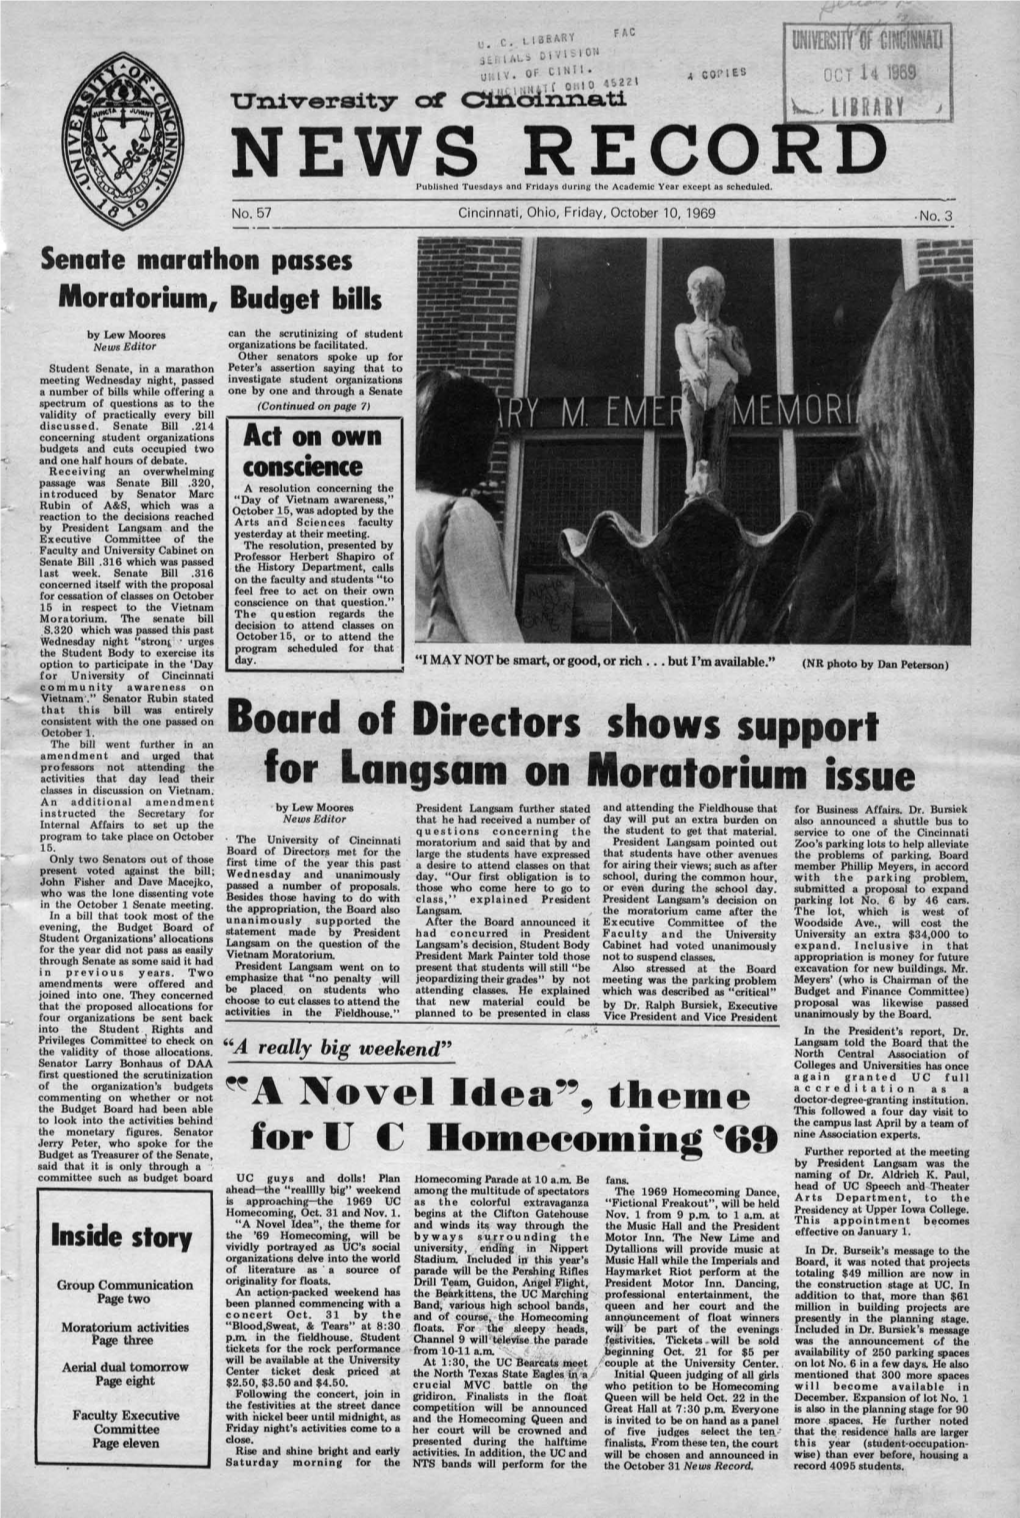 University of Cincinnati News Record. Friday, October 10, 1969. Vol. LVII, No. 3